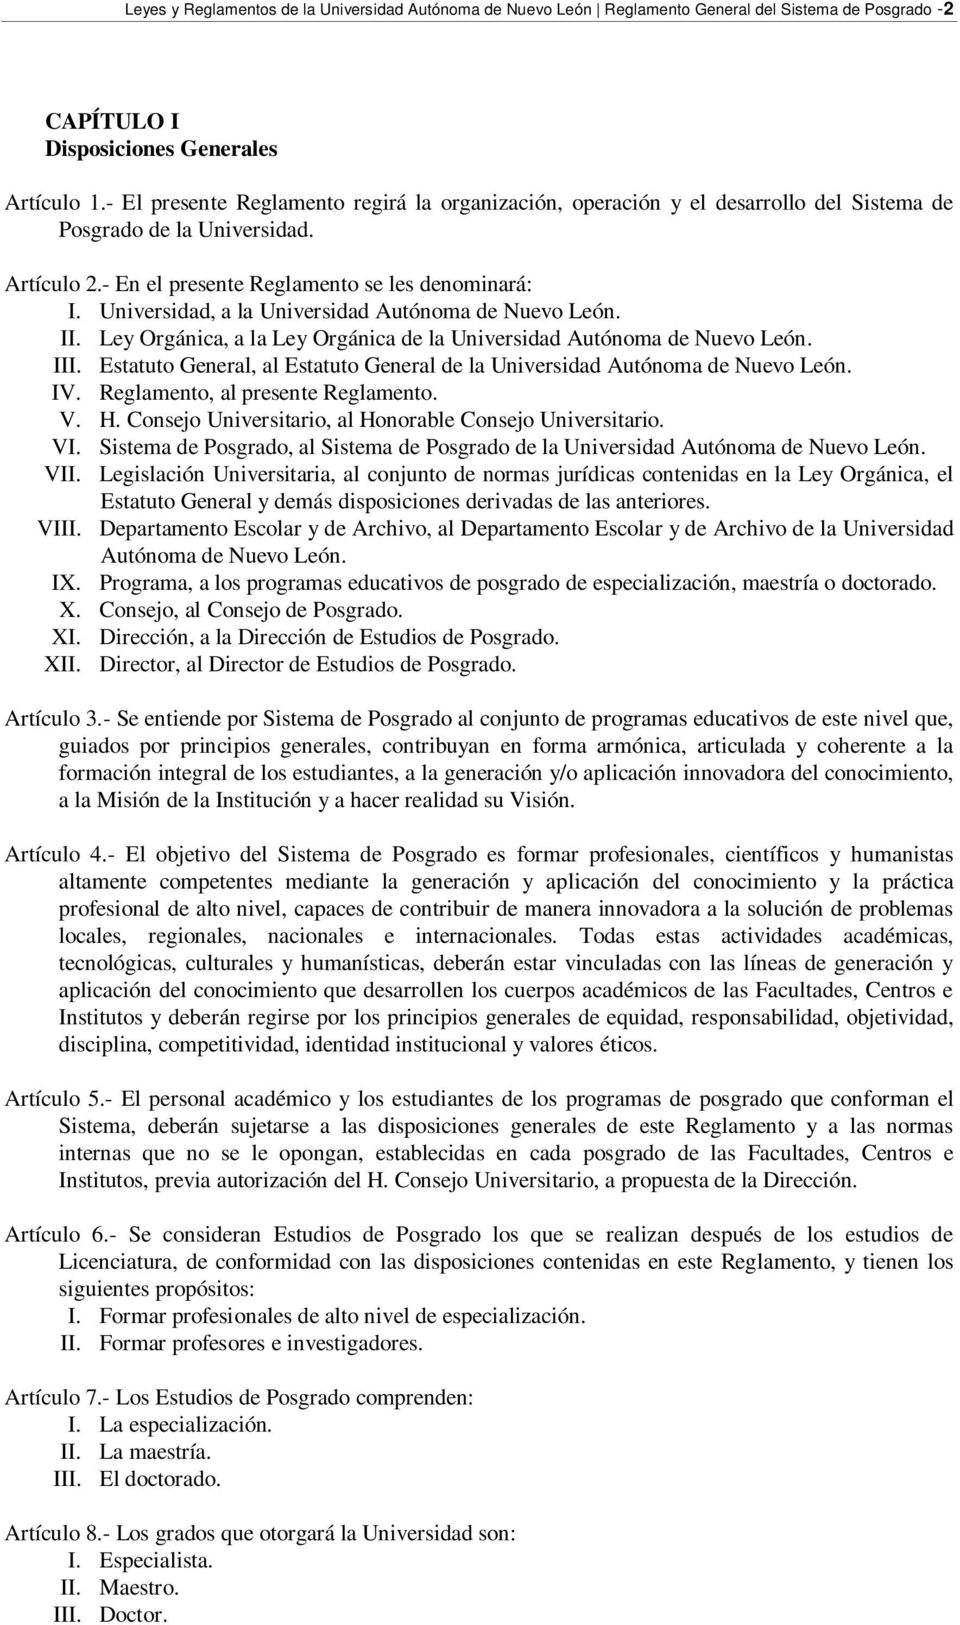 Universidad, a la Universidad Autónoma de Nuevo León. II. Ley Orgánica, a la Ley Orgánica de la Universidad Autónoma de Nuevo León. III.